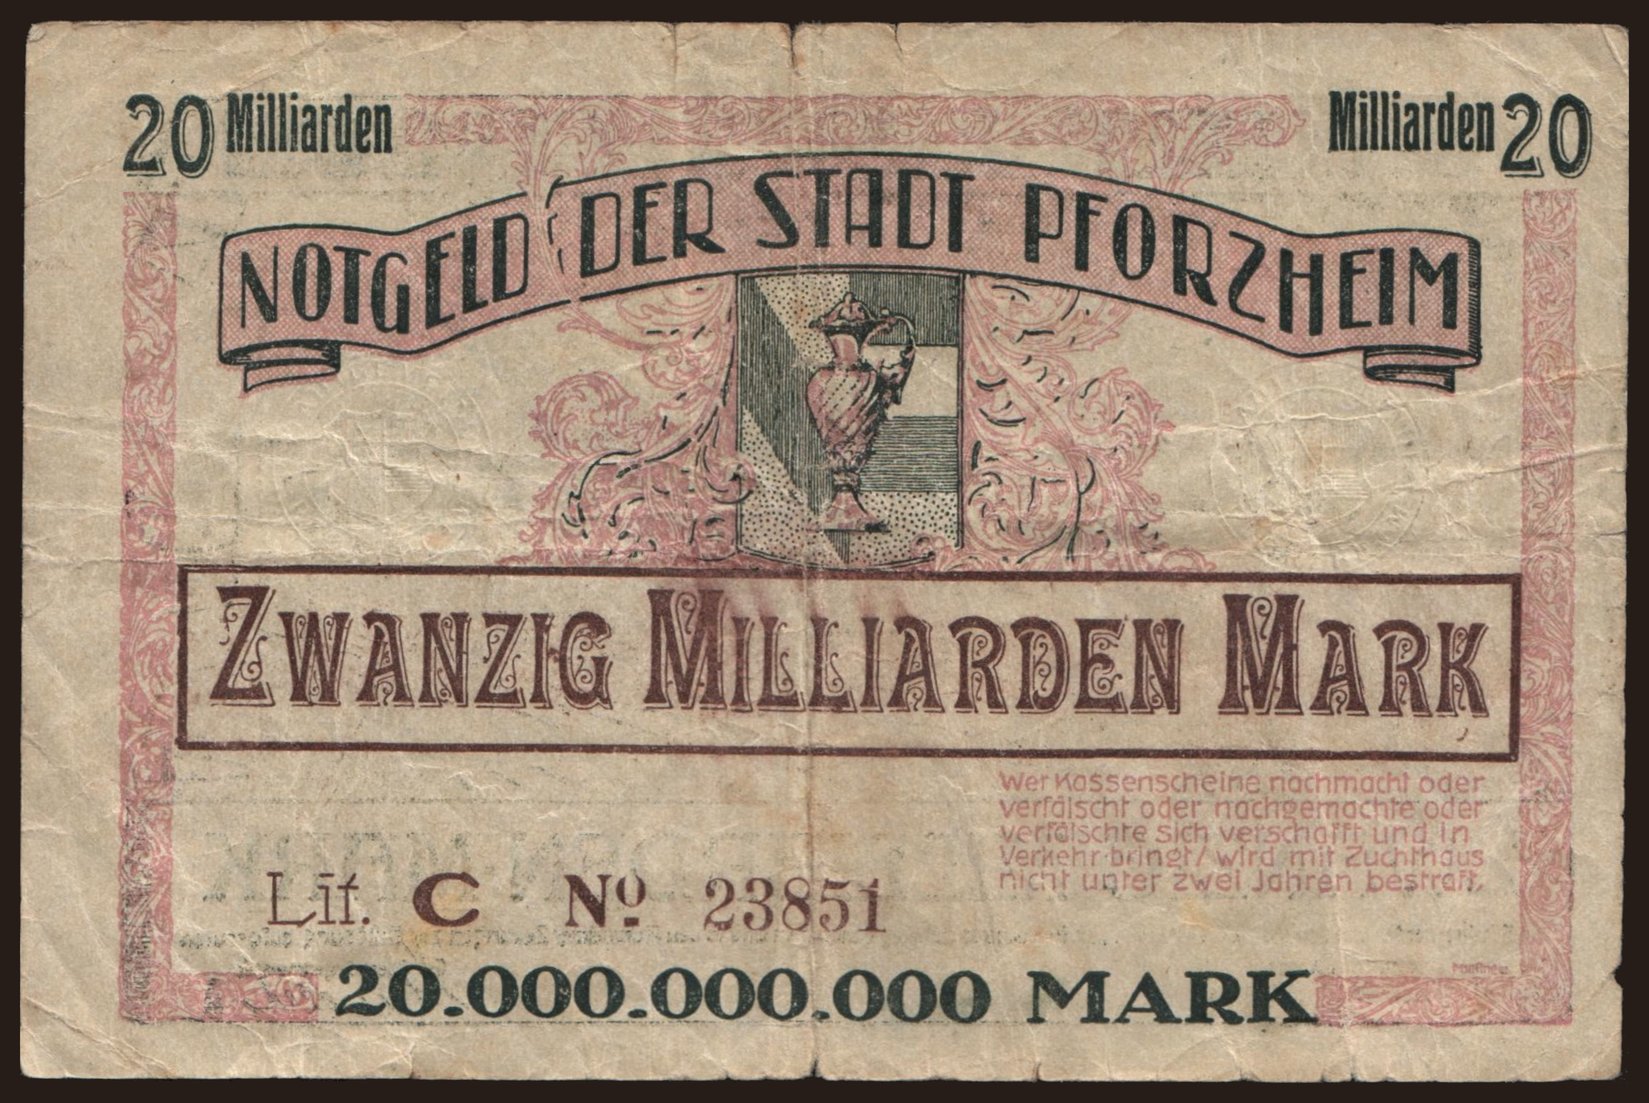 Pforzheim/ Stadt, 20.000.000.000 Mark, 1923